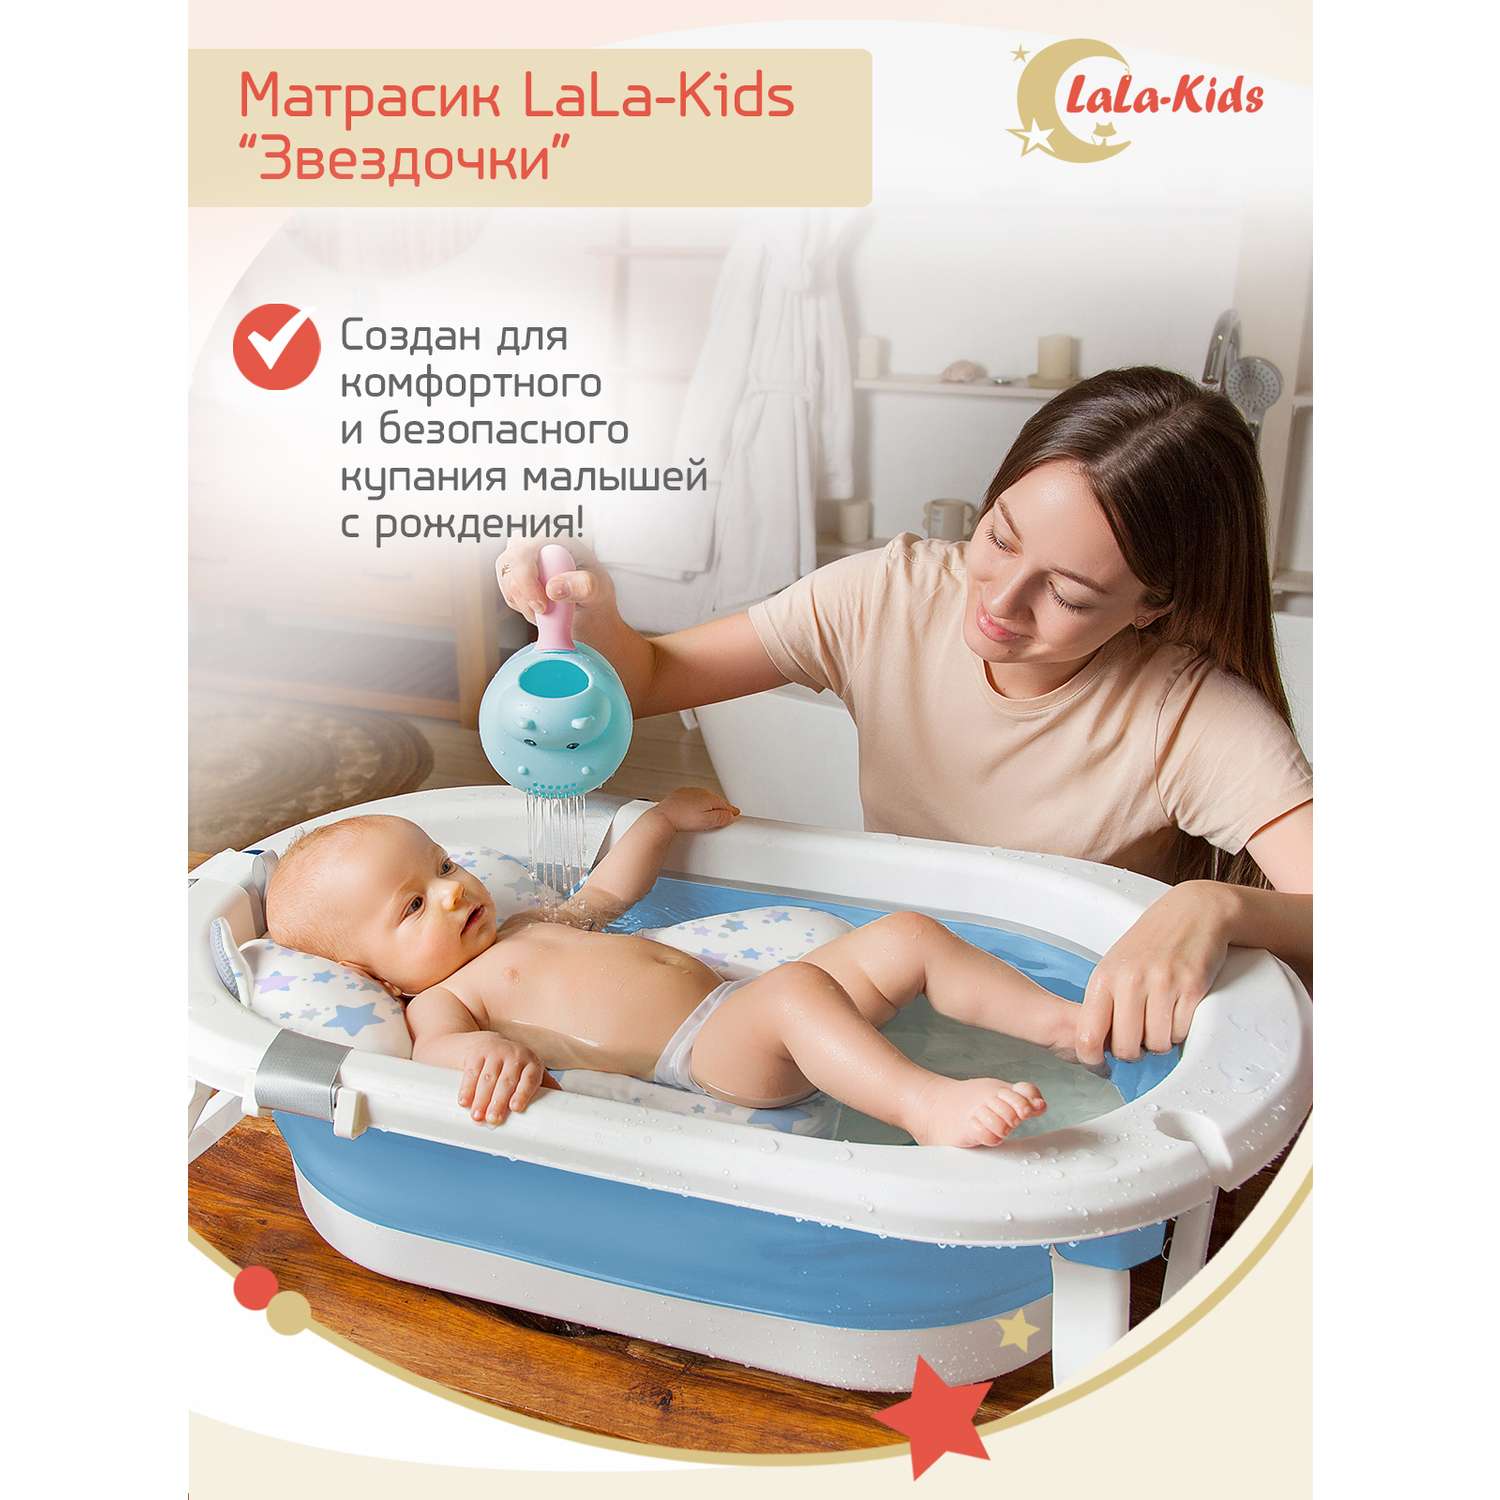 Матрасик Звездный голубой LaLa-Kids для купания новорожденных - фото 2